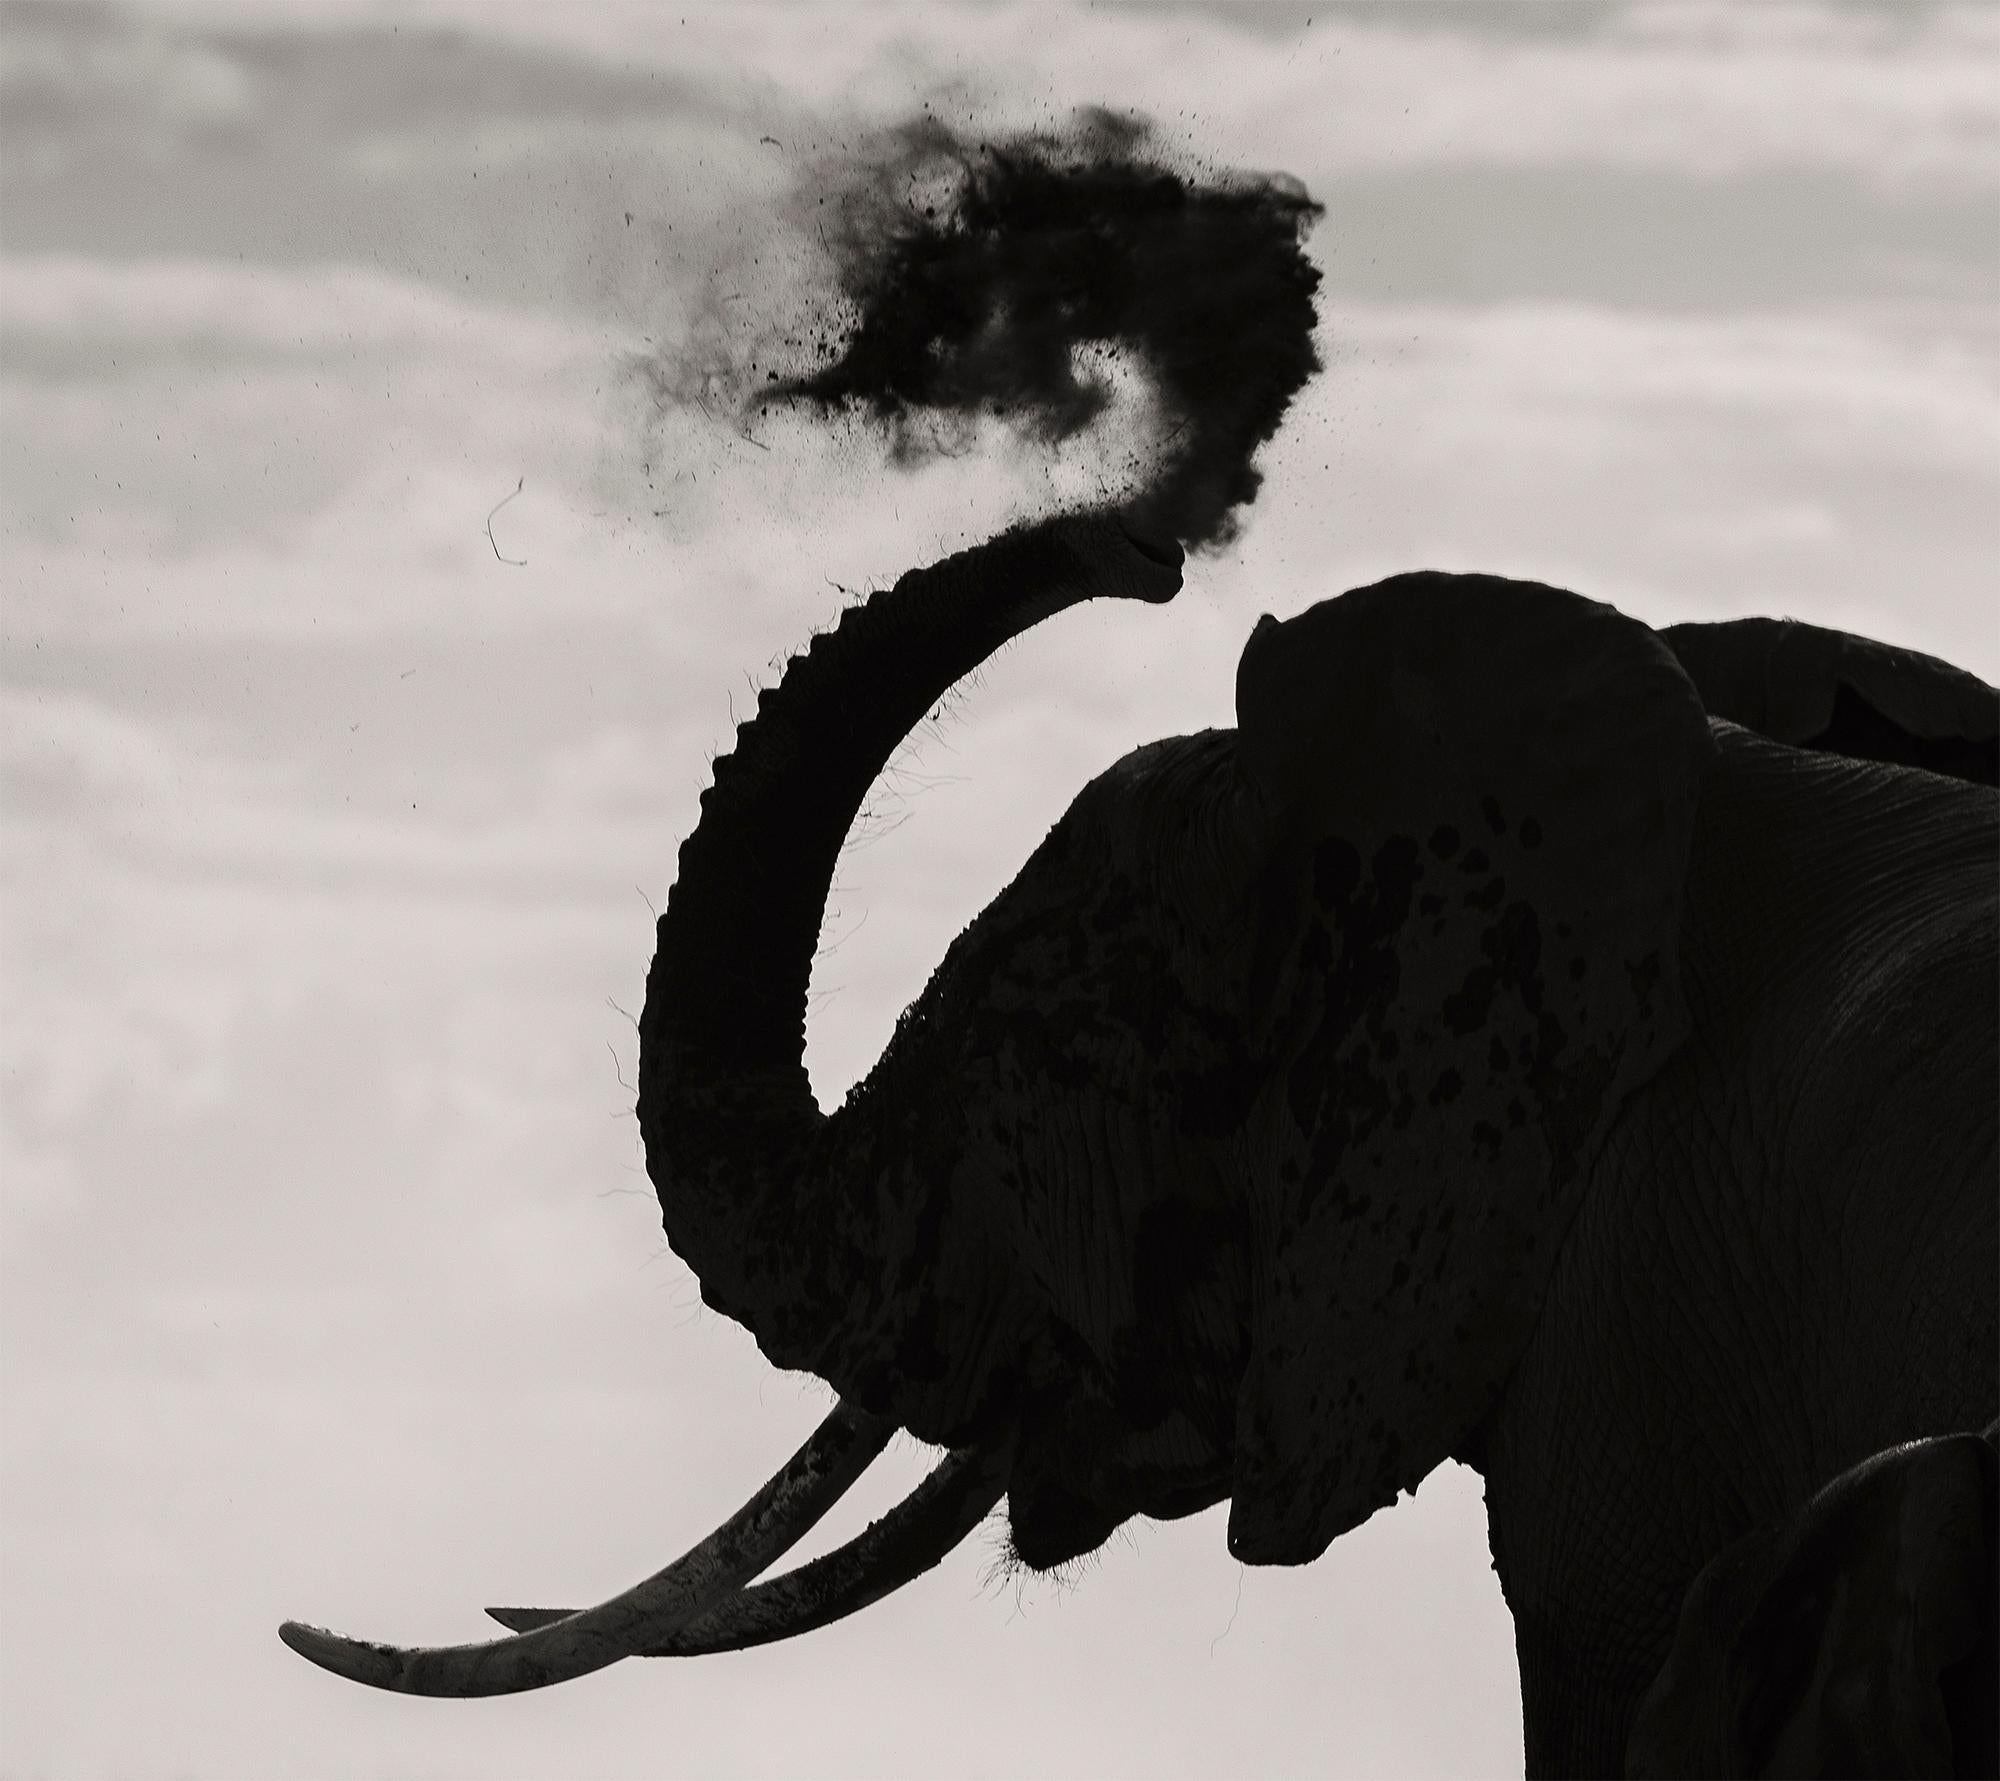 Memory Eternity #2, Kenya 2019, Elefant, Wildtiere, Platin (Grau), Black and White Photograph, von Joachim Schmeisser